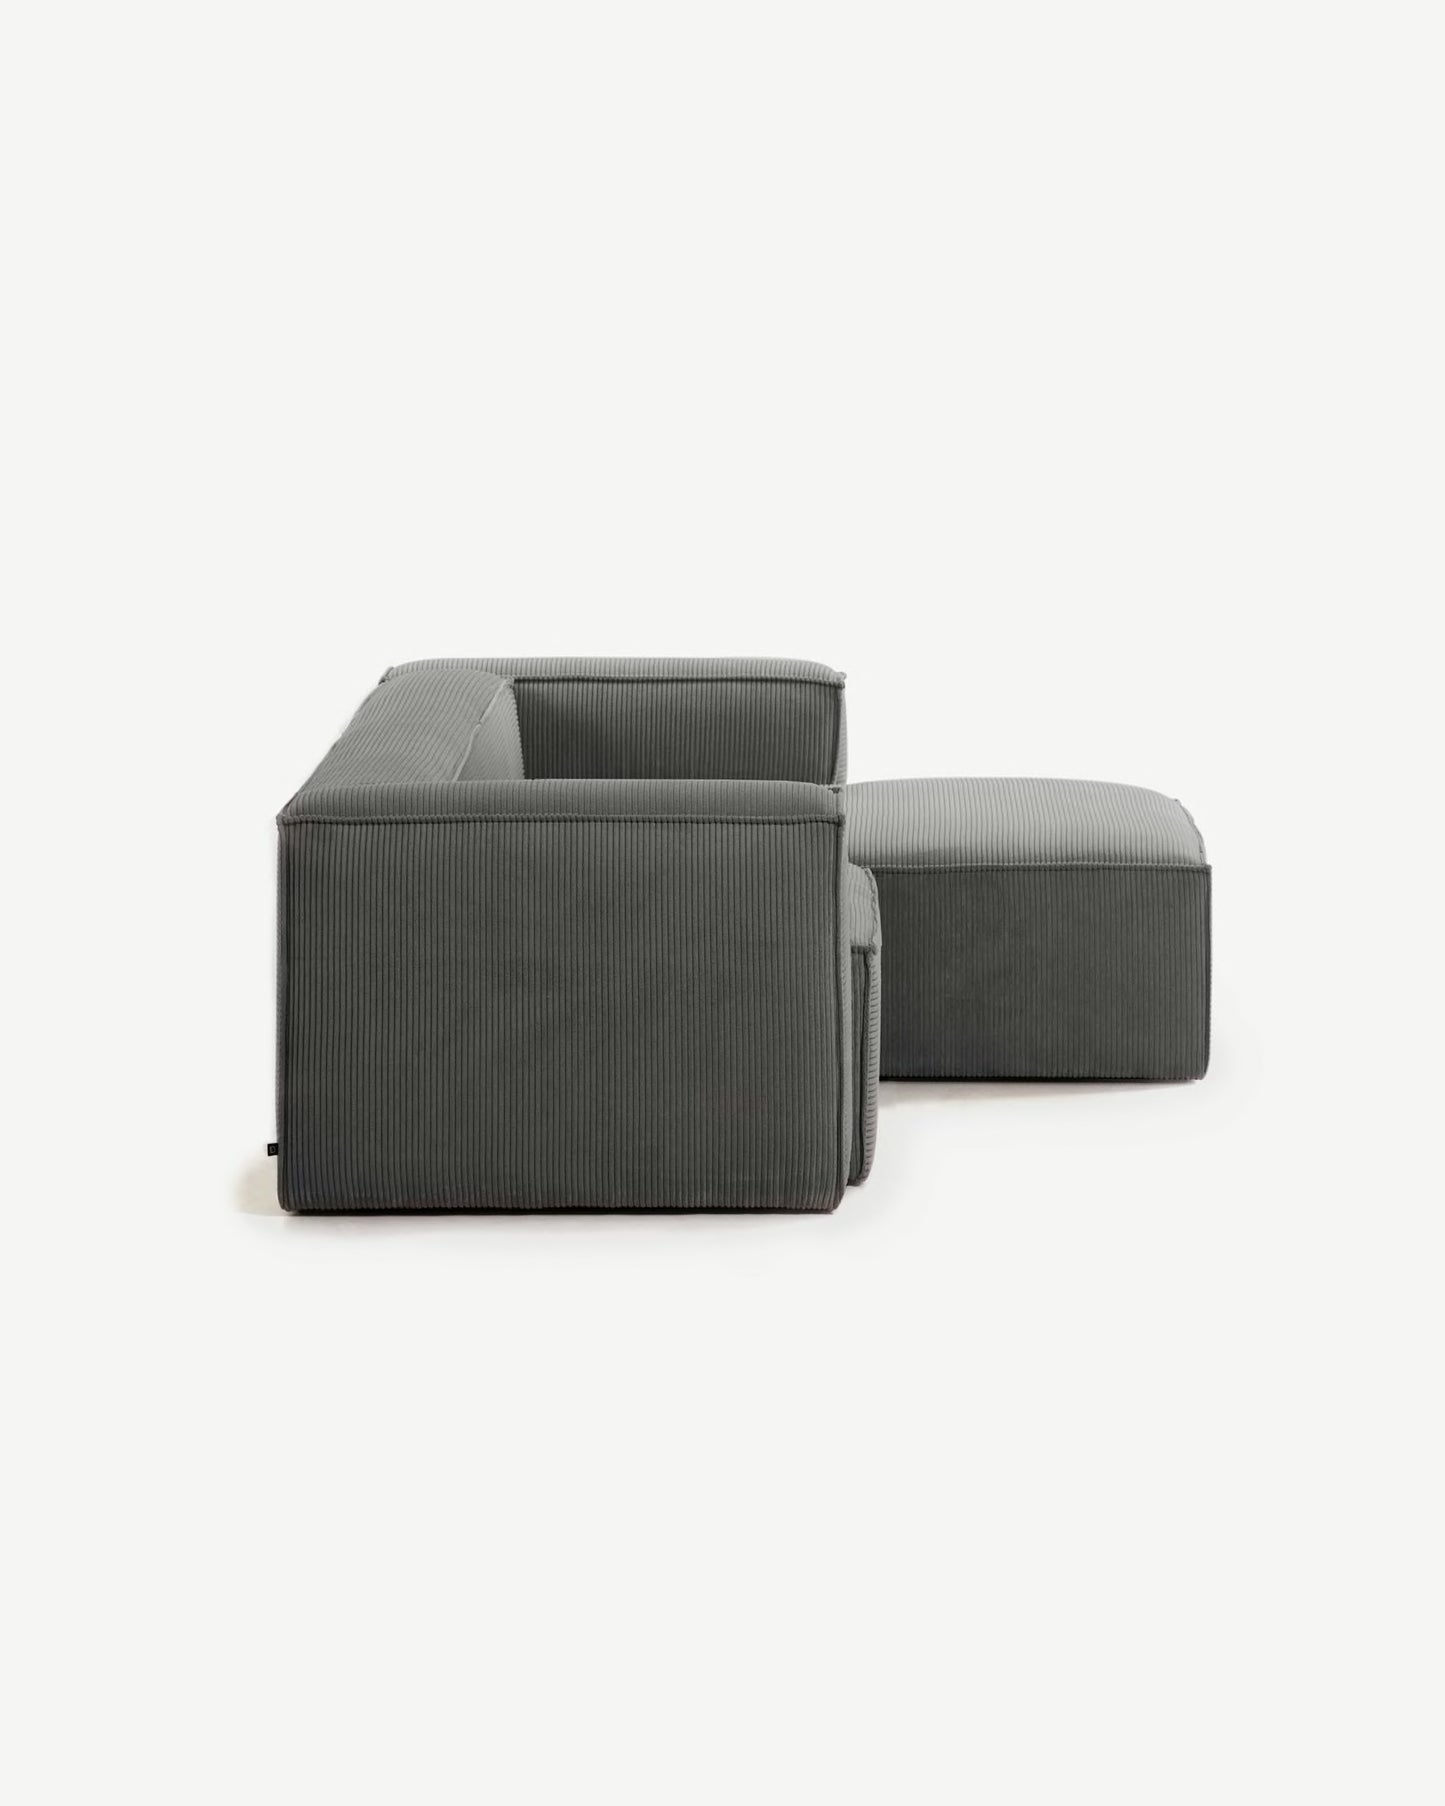 
                  
                    KORDSCHI - 2-Sitzer Sofa mit grauem Kord und Chaiselongue
                  
                